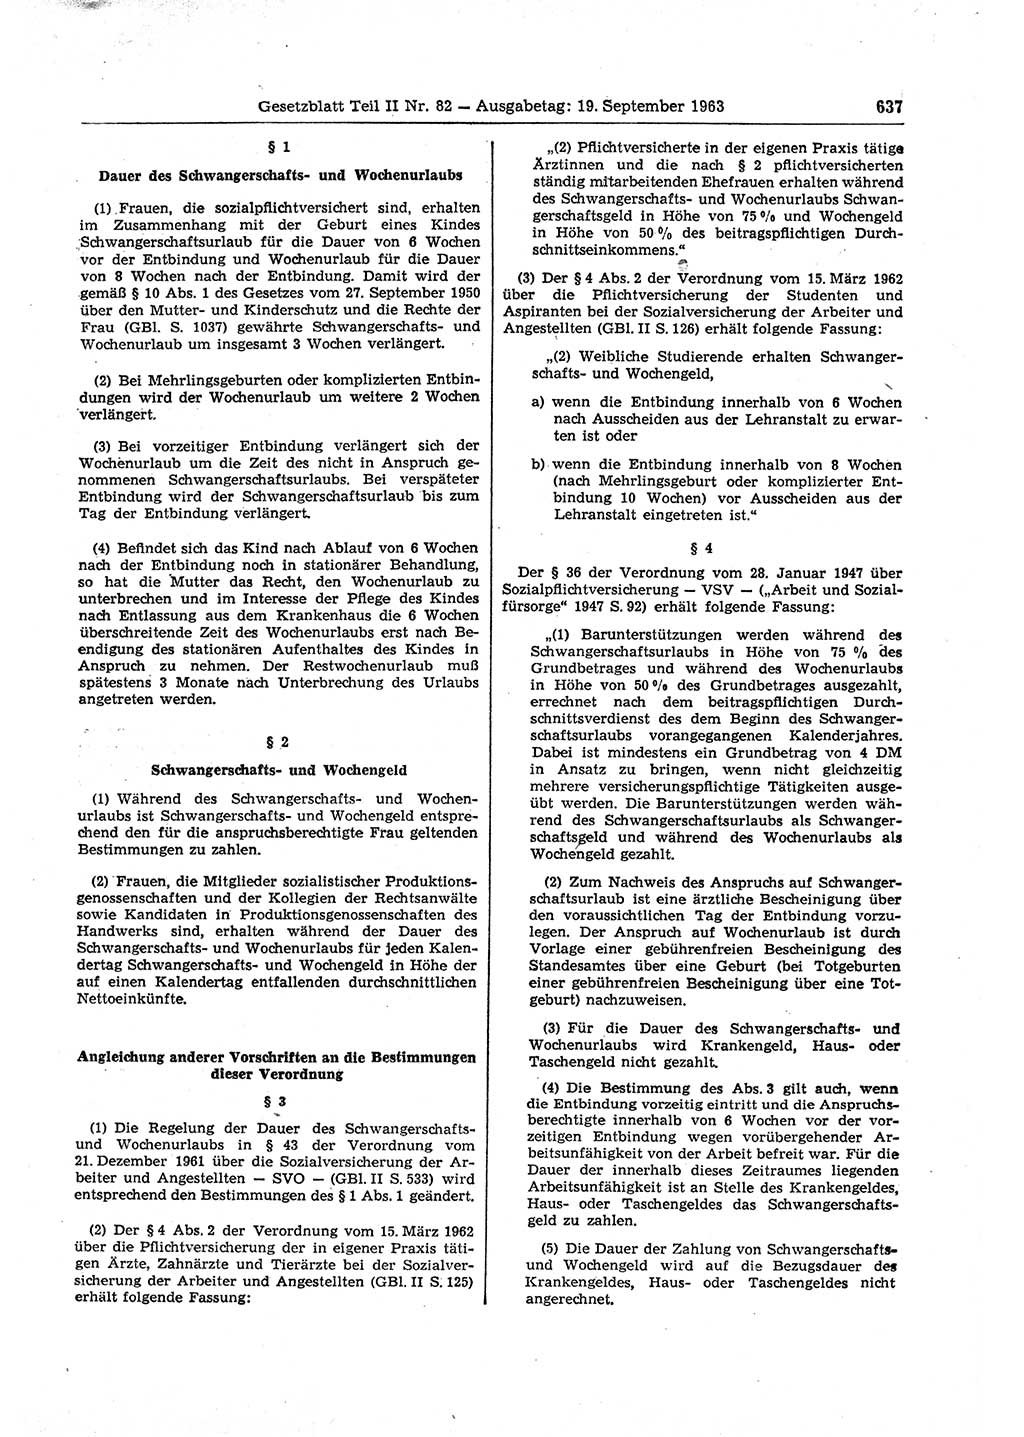 Gesetzblatt (GBl.) der Deutschen Demokratischen Republik (DDR) Teil ⅠⅠ 1963, Seite 637 (GBl. DDR ⅠⅠ 1963, S. 637)